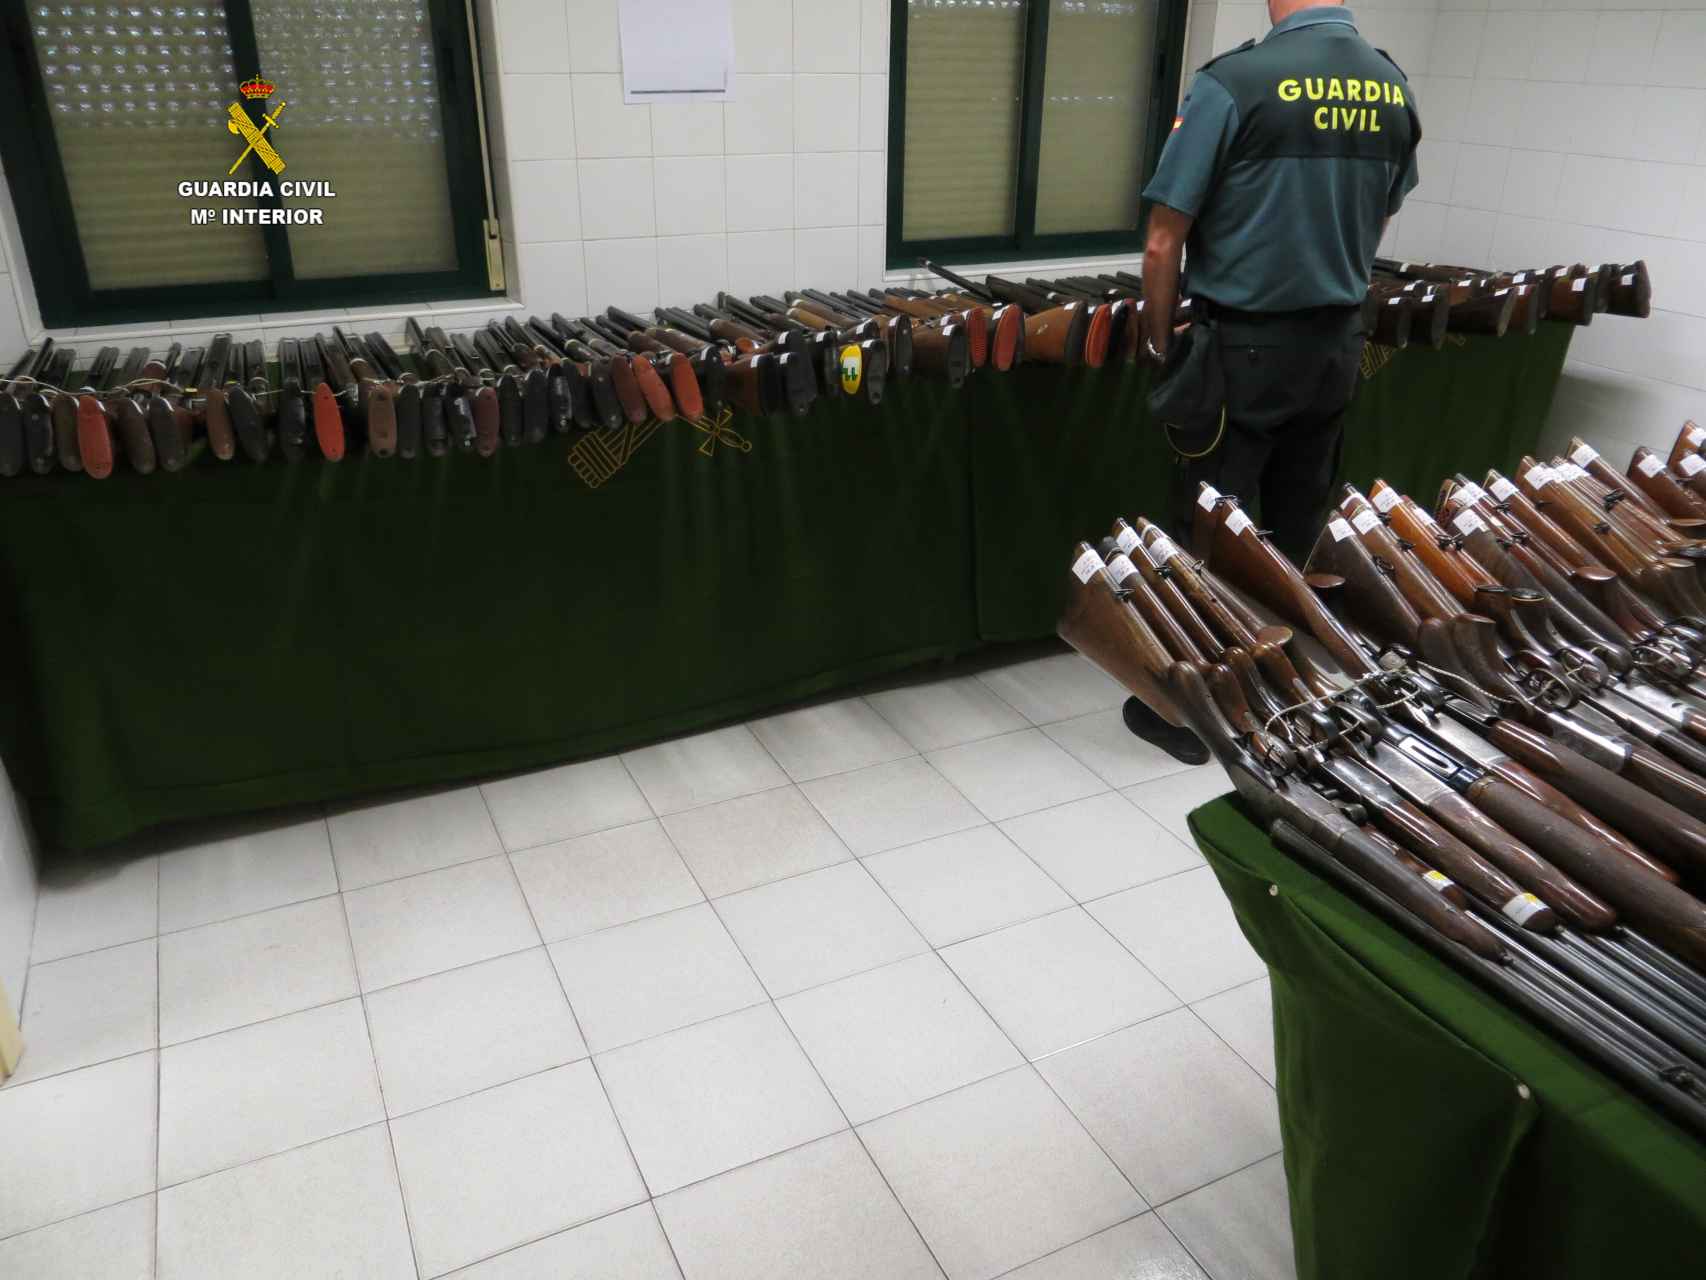 Armas preparadas para subir a subasta en la comandancia de la Guardia Civil en León.